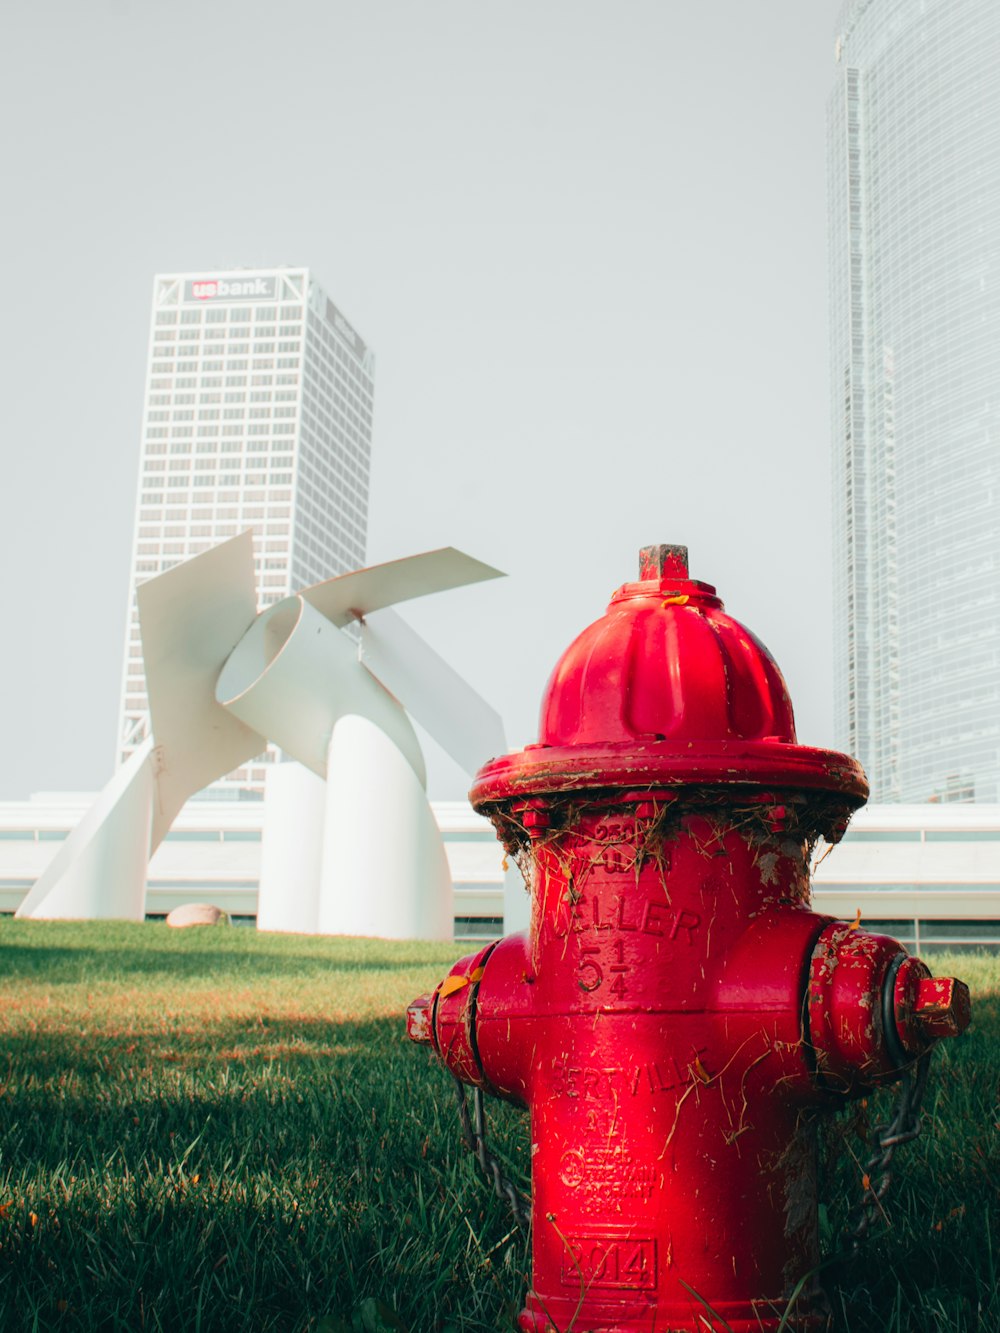 um hidrante vermelho sentado no meio de um campo